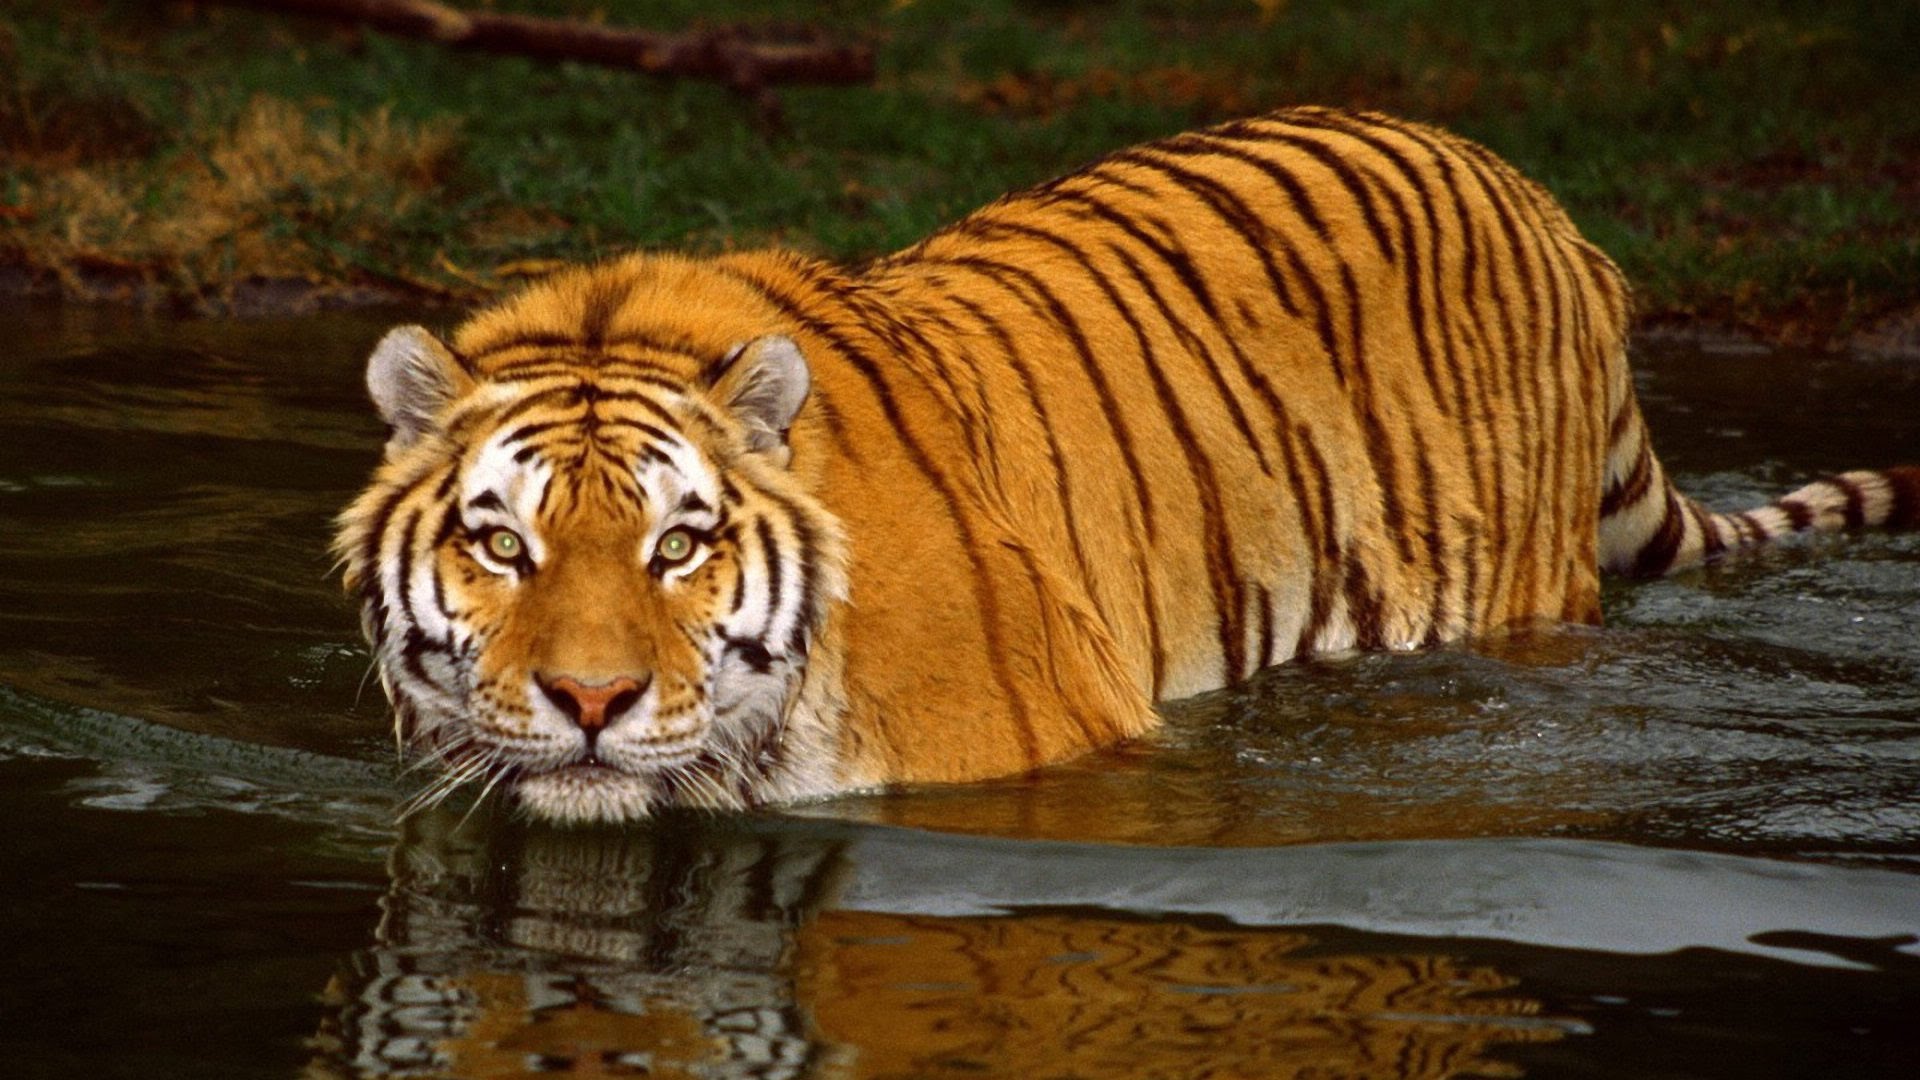 Royal Bengal Tiger at Zoo (Part 2) - YouTube